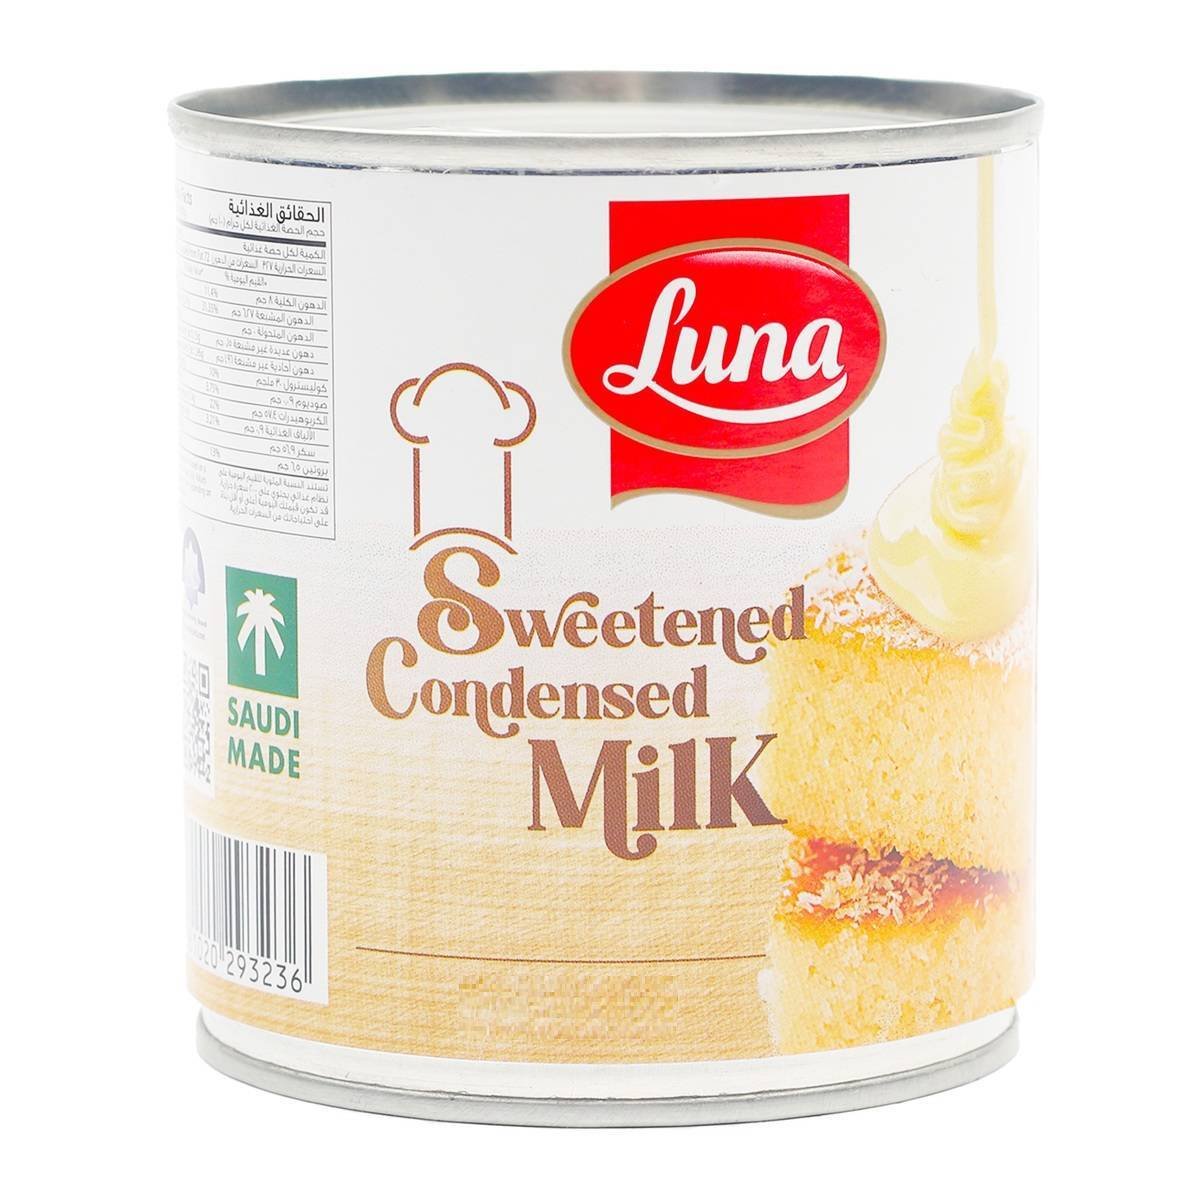 Buy Luna Sweetened Condensed Milk 370 g Online at Best Price | Condnsd Sweetnd Milk | Lulu Egypt in Saudi Arabia